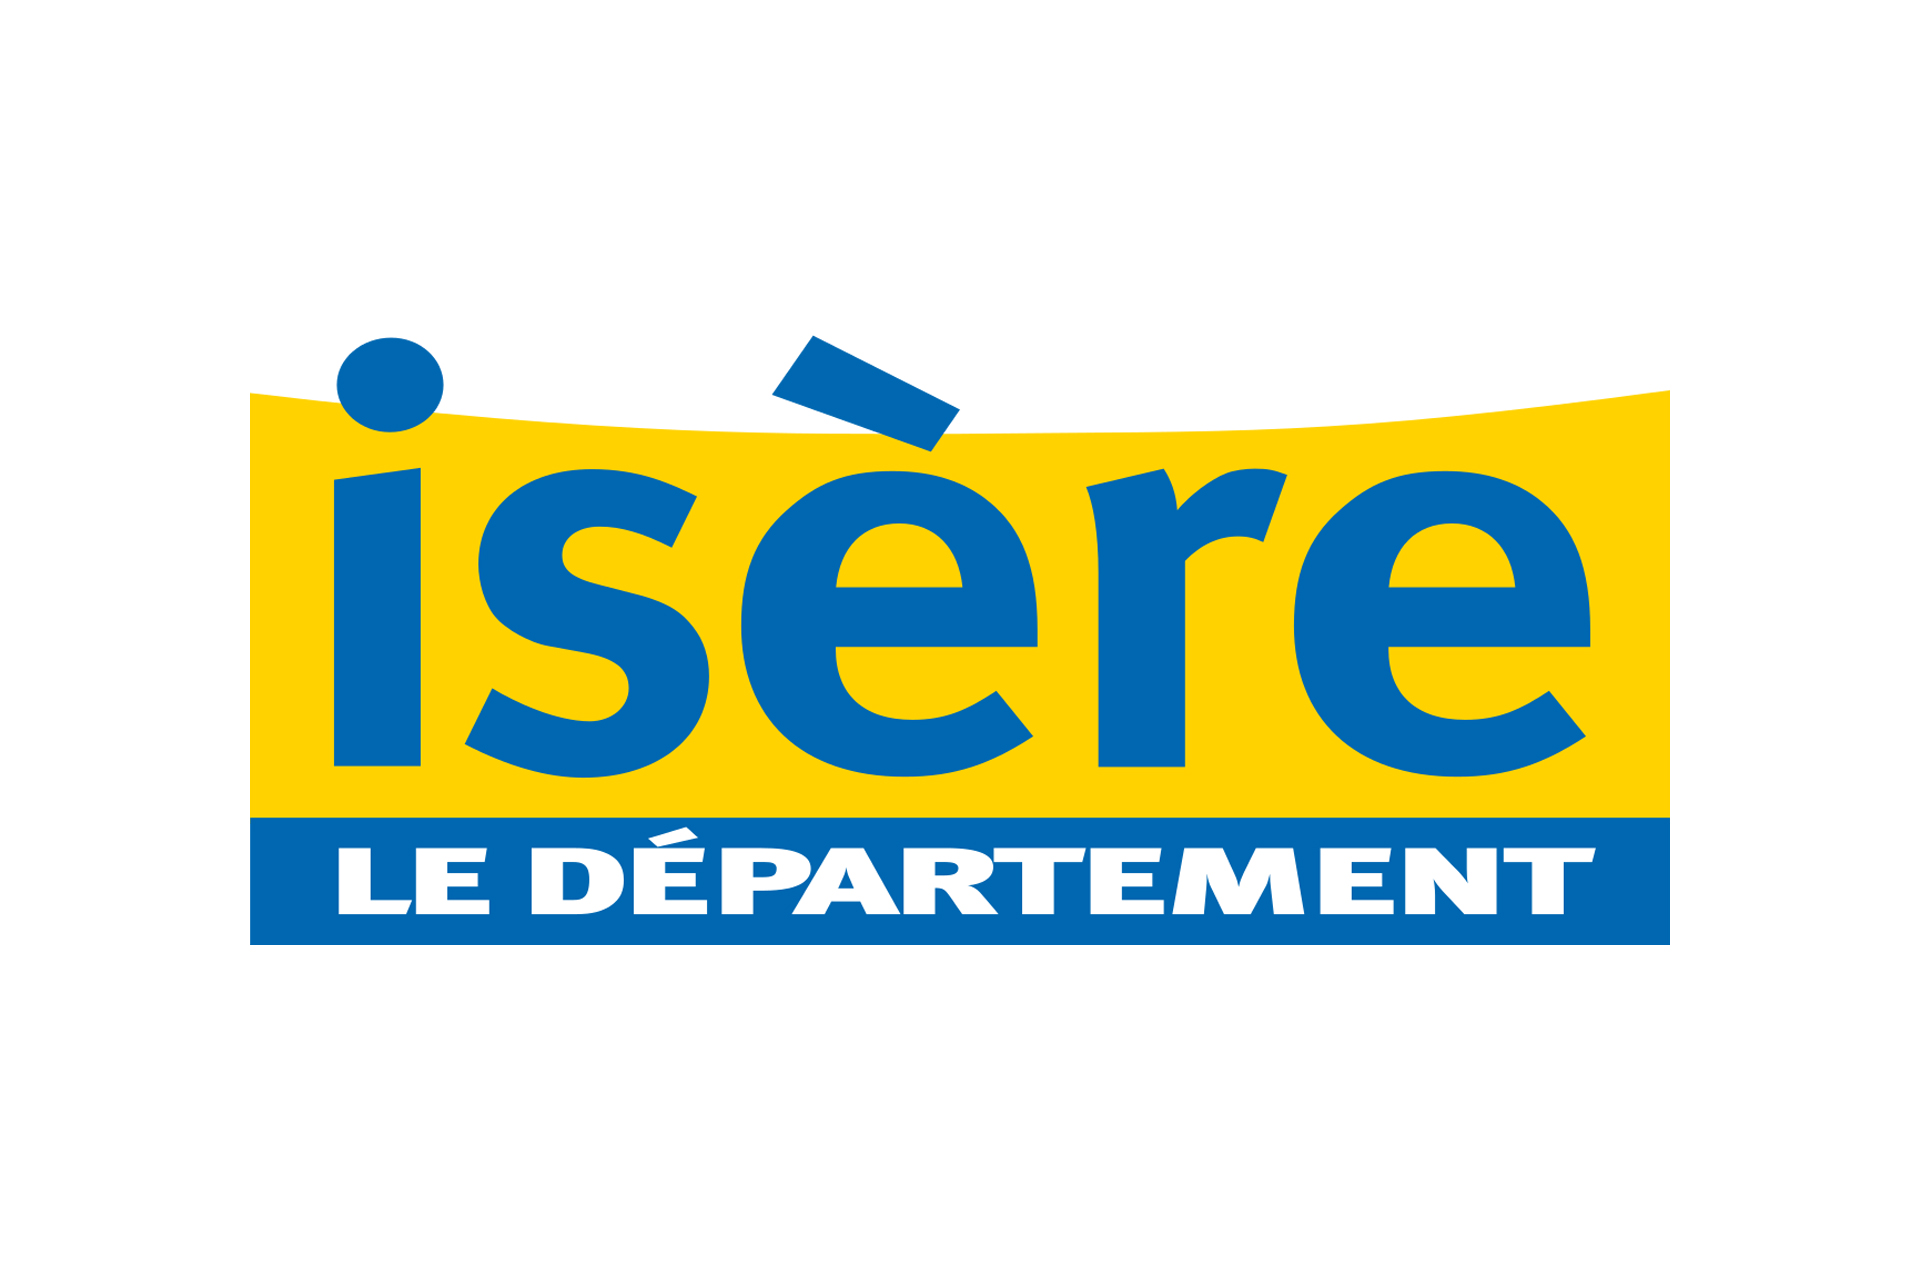 Chamrousse logo partenaire institution département isère station ski montagne grenoble alpes france - © Département de l'Isère